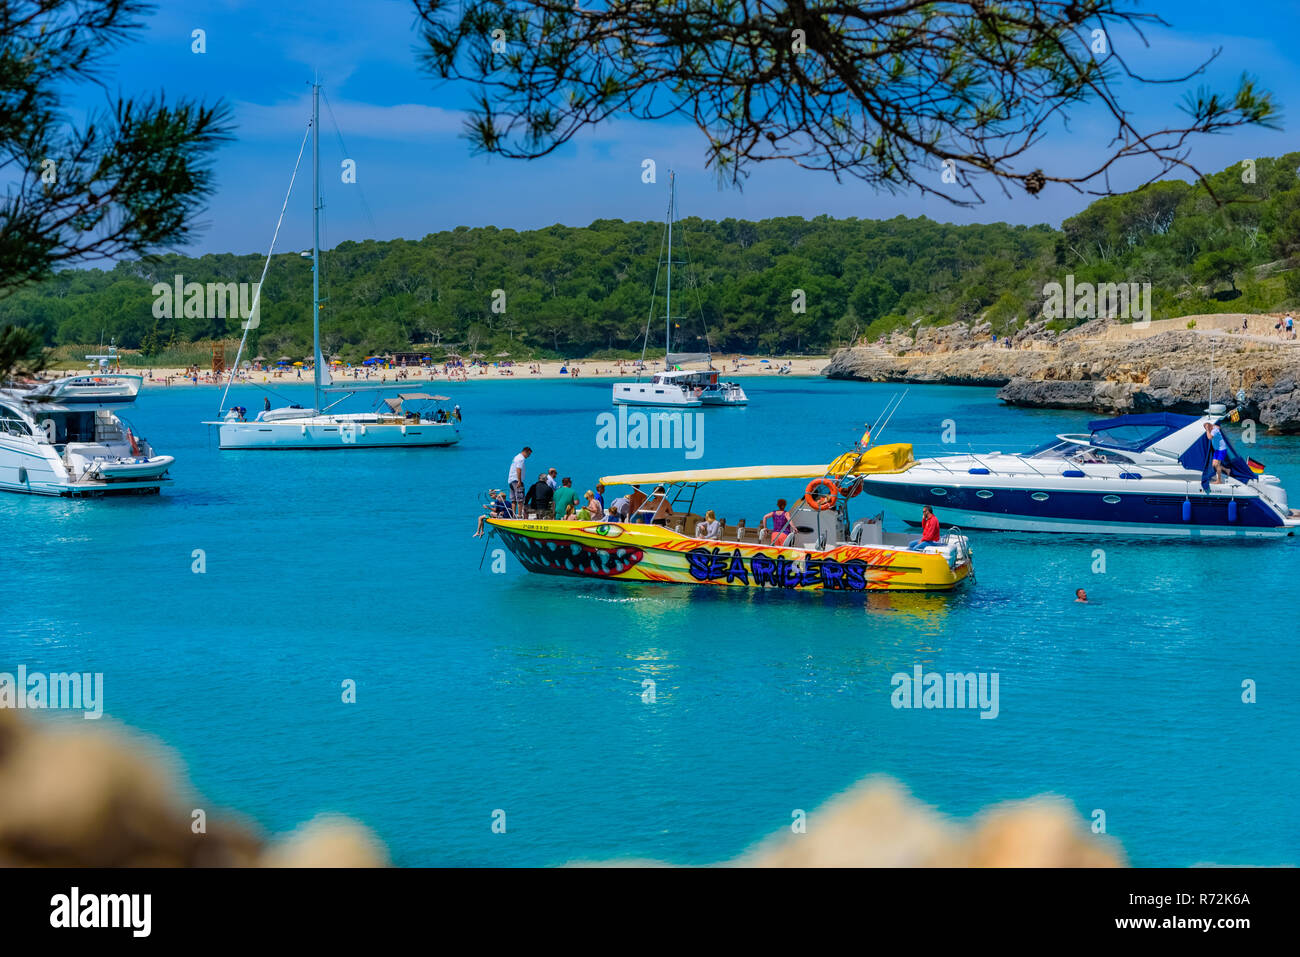 Palma Mallorca, España - 20 de mayo de 2018, personas que disfrutan de unas vacaciones de verano en el velero, en la isla de Mallorca Foto de stock